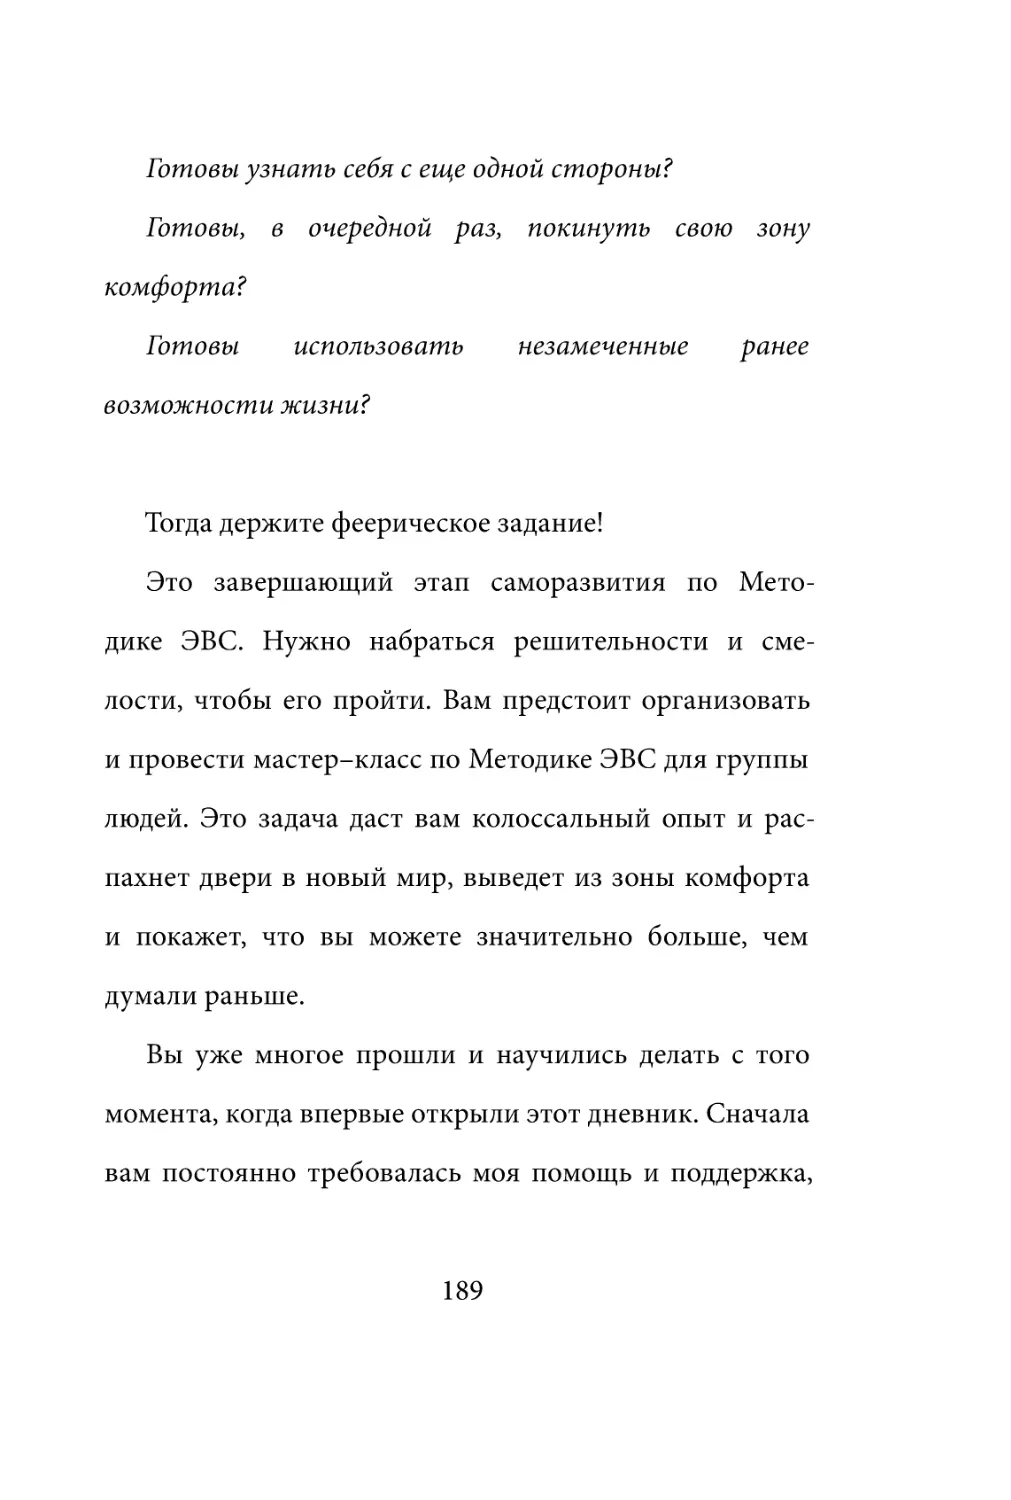 Sergey_Filippov_Dnevnik_samorazvitia_Evolyutsia_Vnutrennego_Sostoyania_189.pdf (p.189)